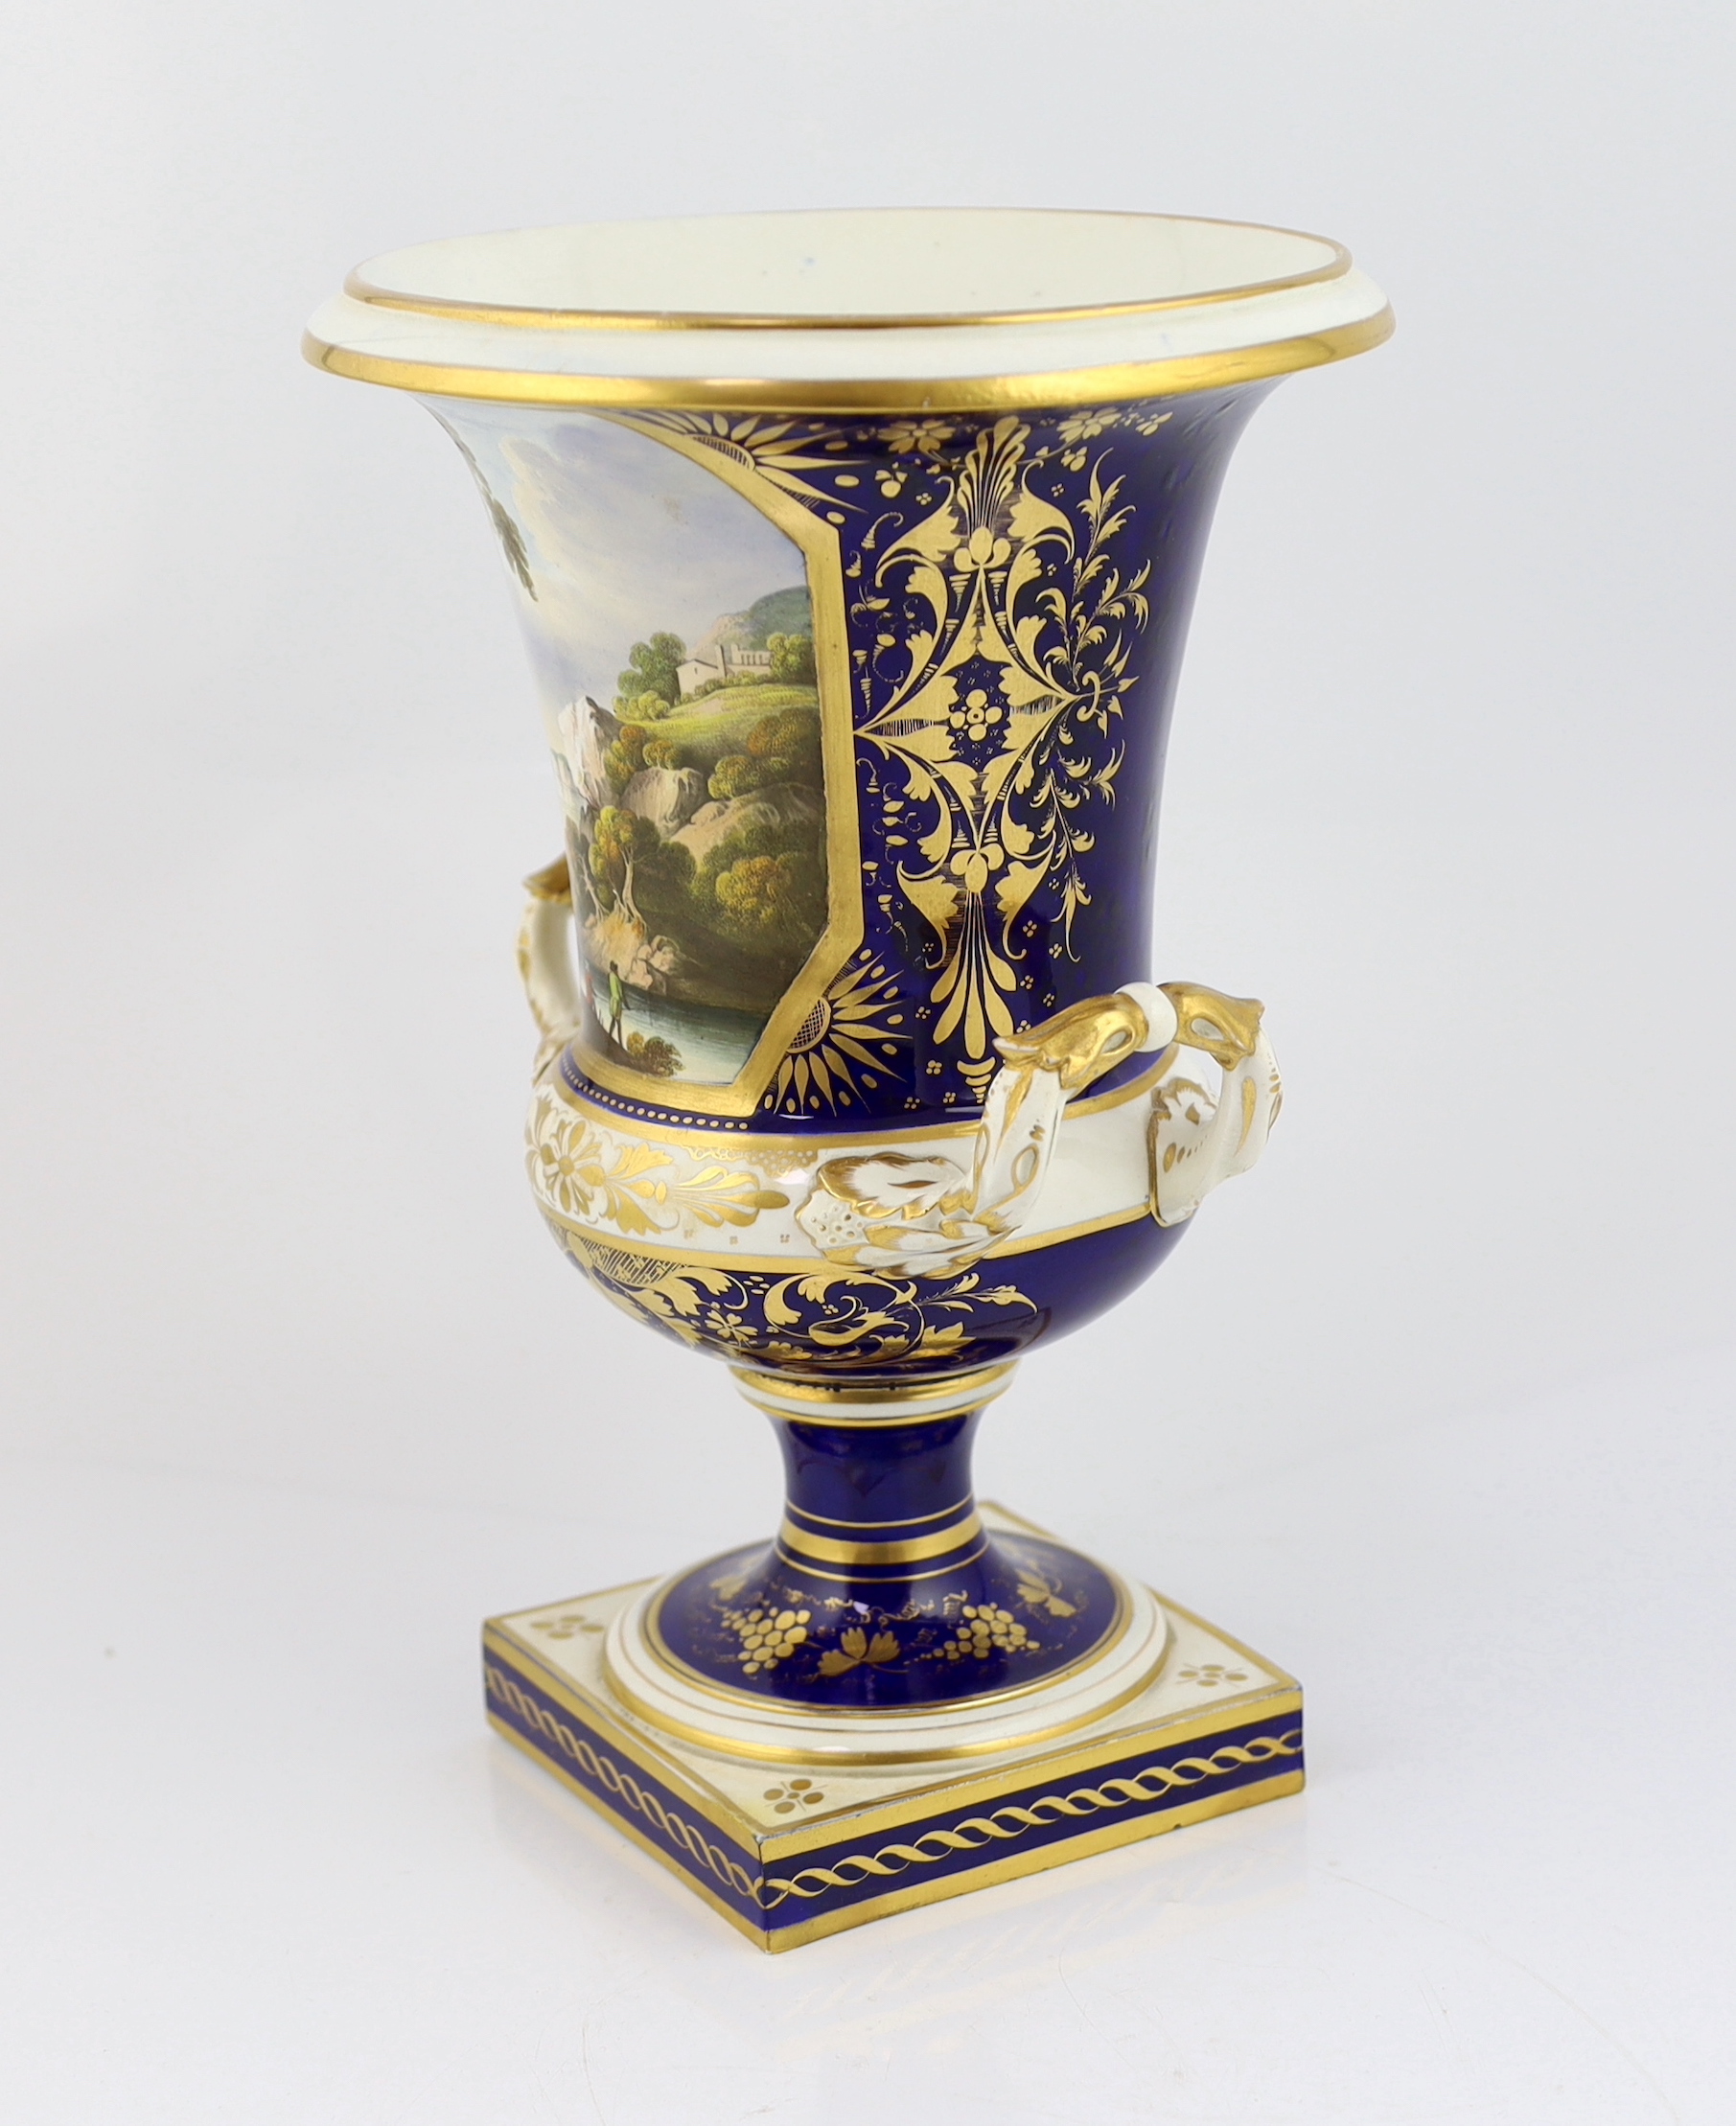 A large Bloor Derby campana landscape vase, c.1830